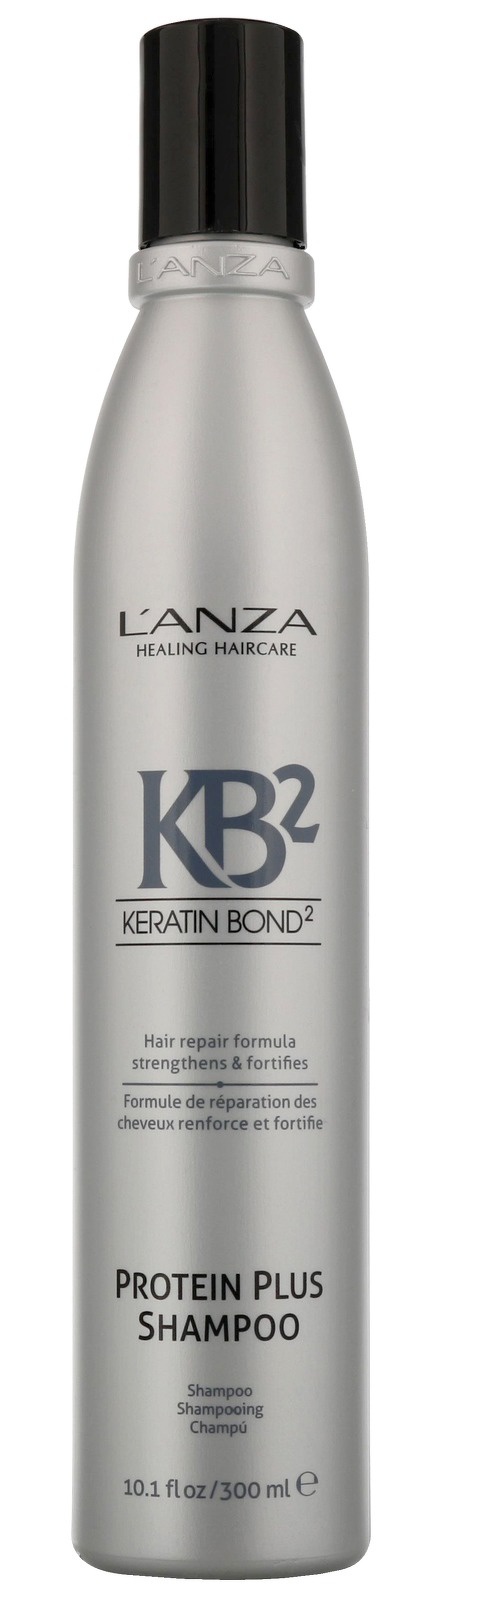 L’anza KB2 Protein Plus Shampoo